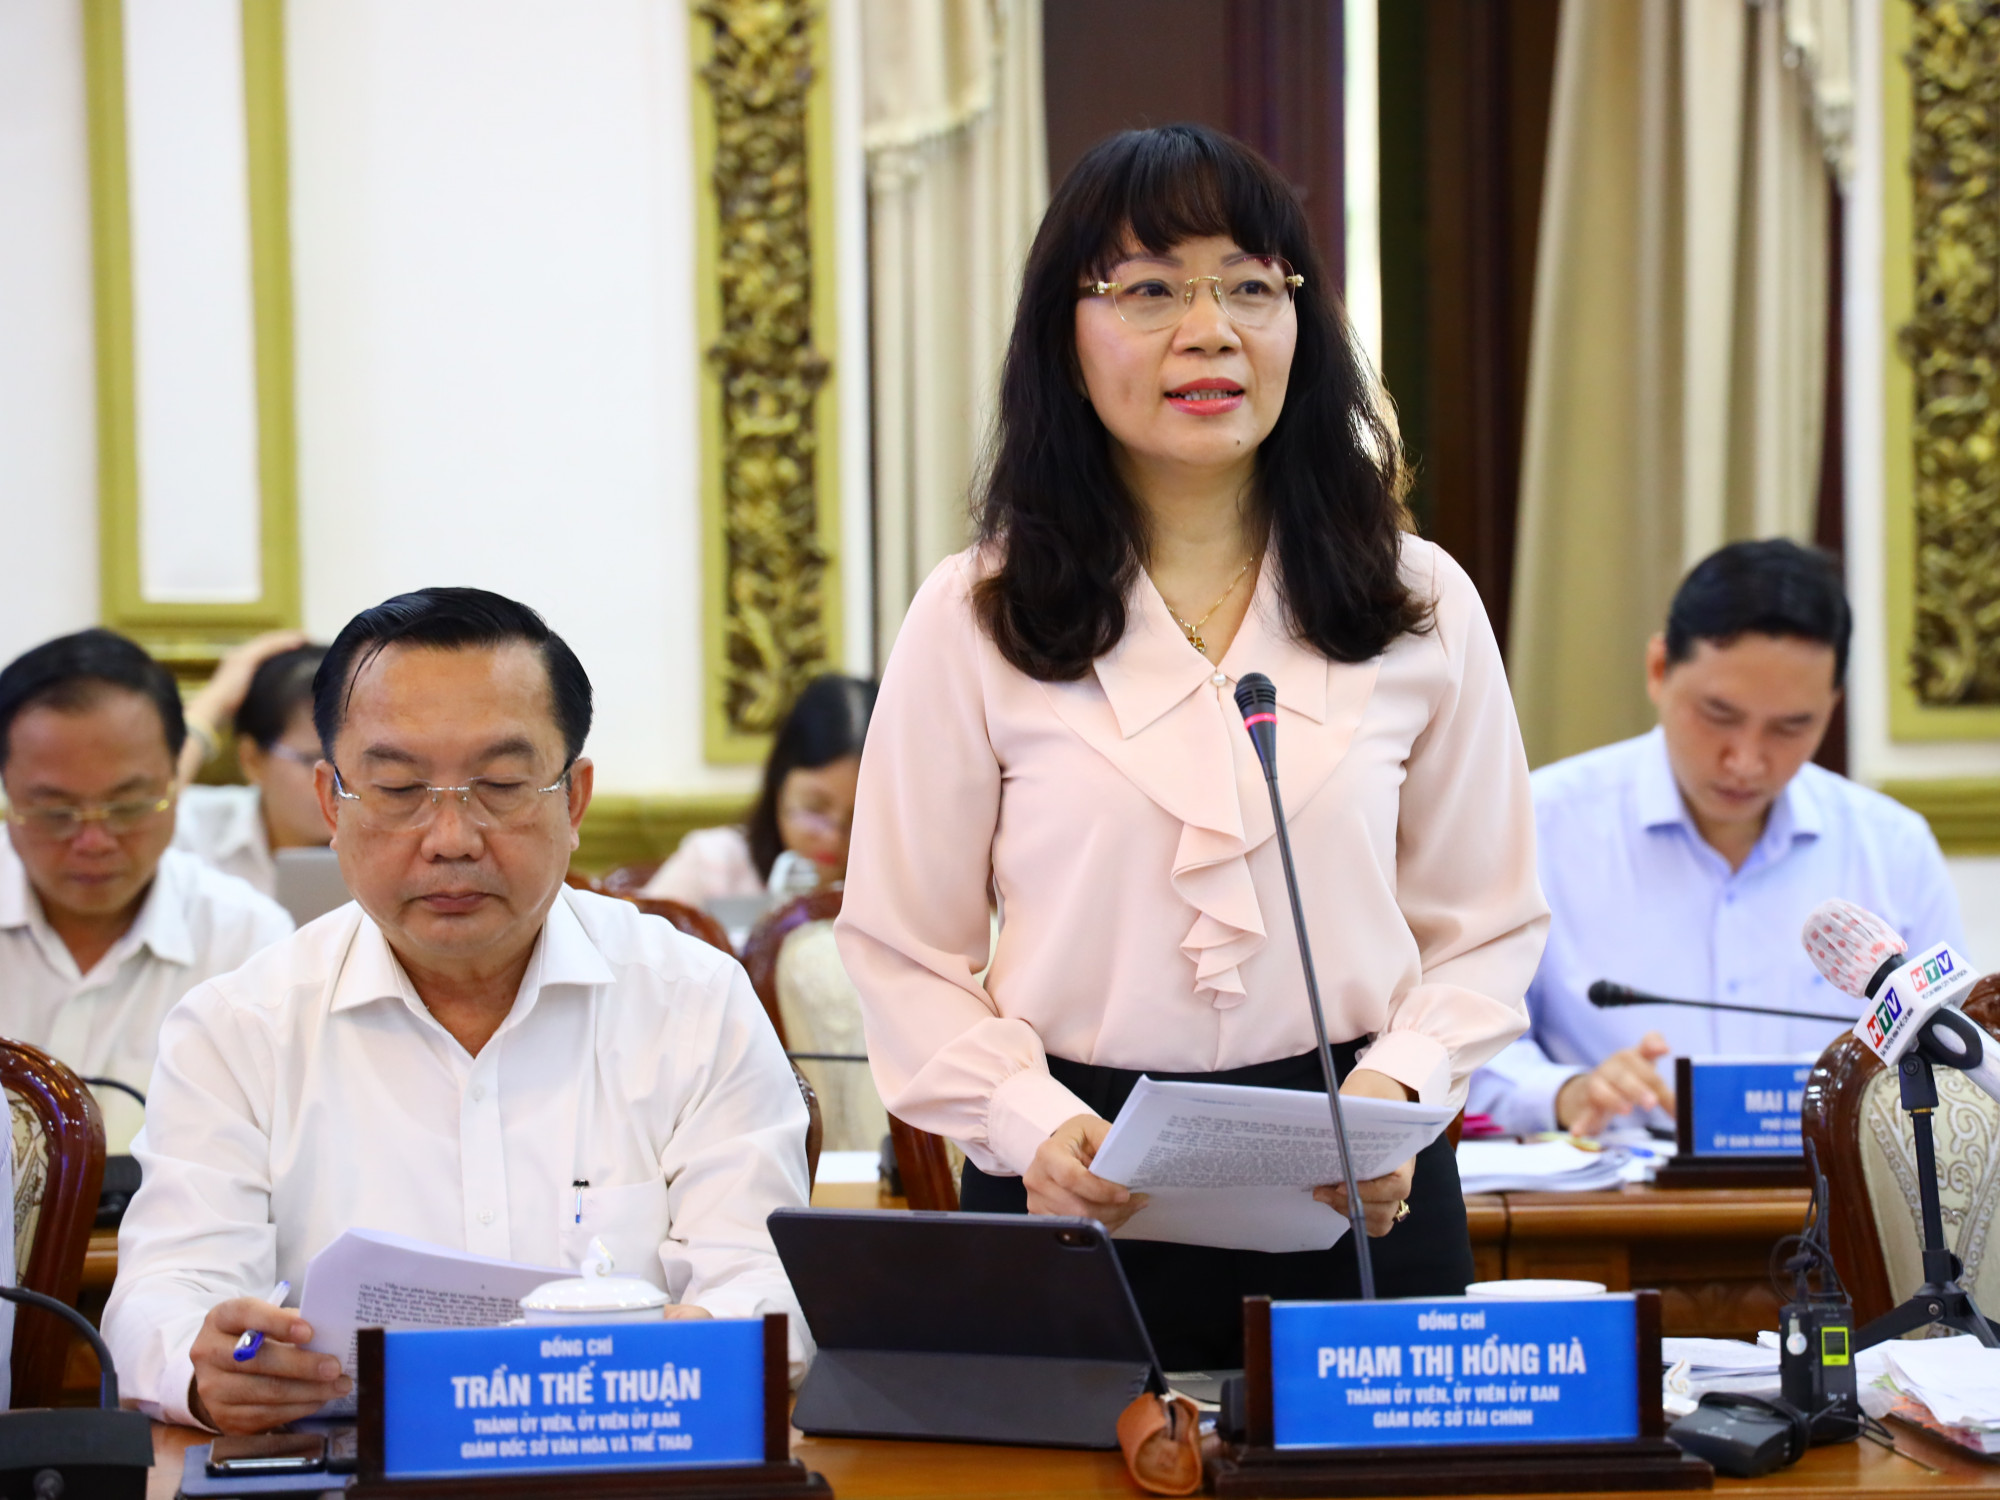 Bà Phạm Thị Hồng Hà - Giám đốc Sở Tài chính TPHCM thông tin, trong 6 tháng đầu năm, Sở nhận nhiều phản ánh của các quận về thiếu nguồn vốn sửa chữa đường hẻm, không chủ động sử dụng kết dư ngân sách để làm các dự án trong nghị quyết Đảng bộ quận đầu nhiệm kỳ.